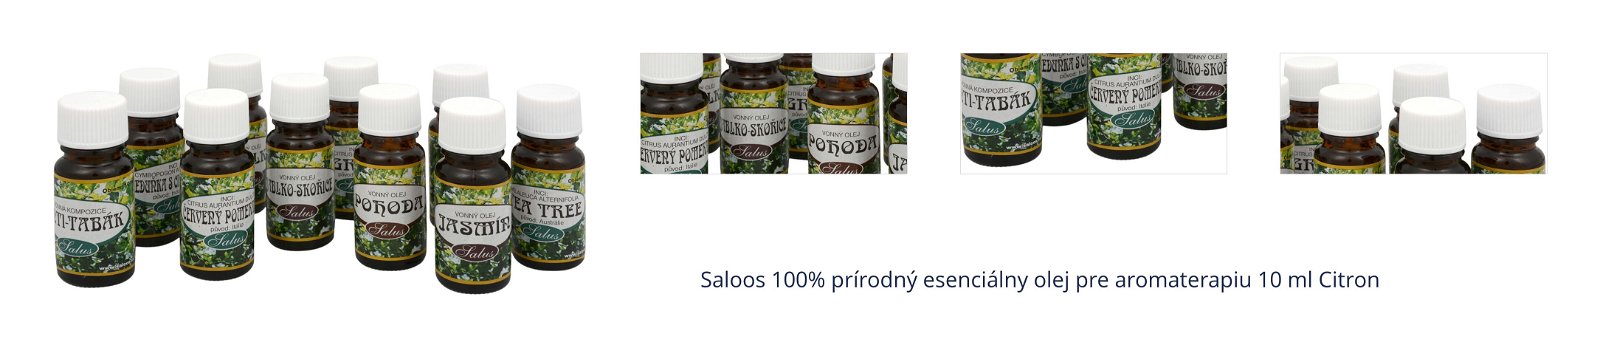 Saloos 100% prírodný esenciálny olej pre aromaterapiu 10 ml Citron 1